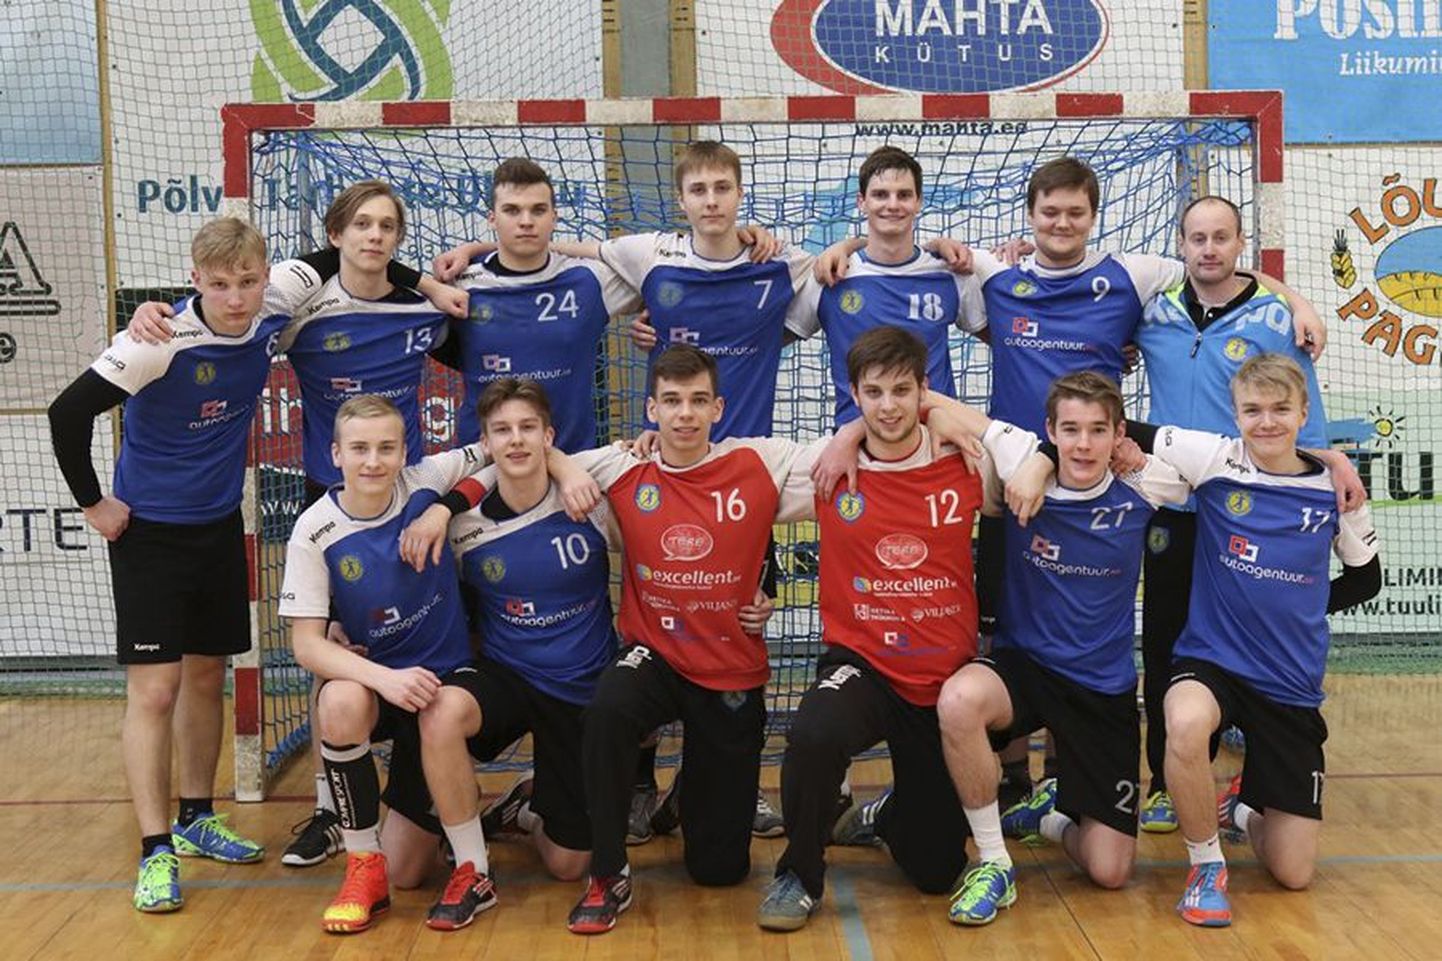 Viljandi spordikooli A-klassi käsipallimeeskond võitis Eesti meistrivõistlustel pronksmedali.